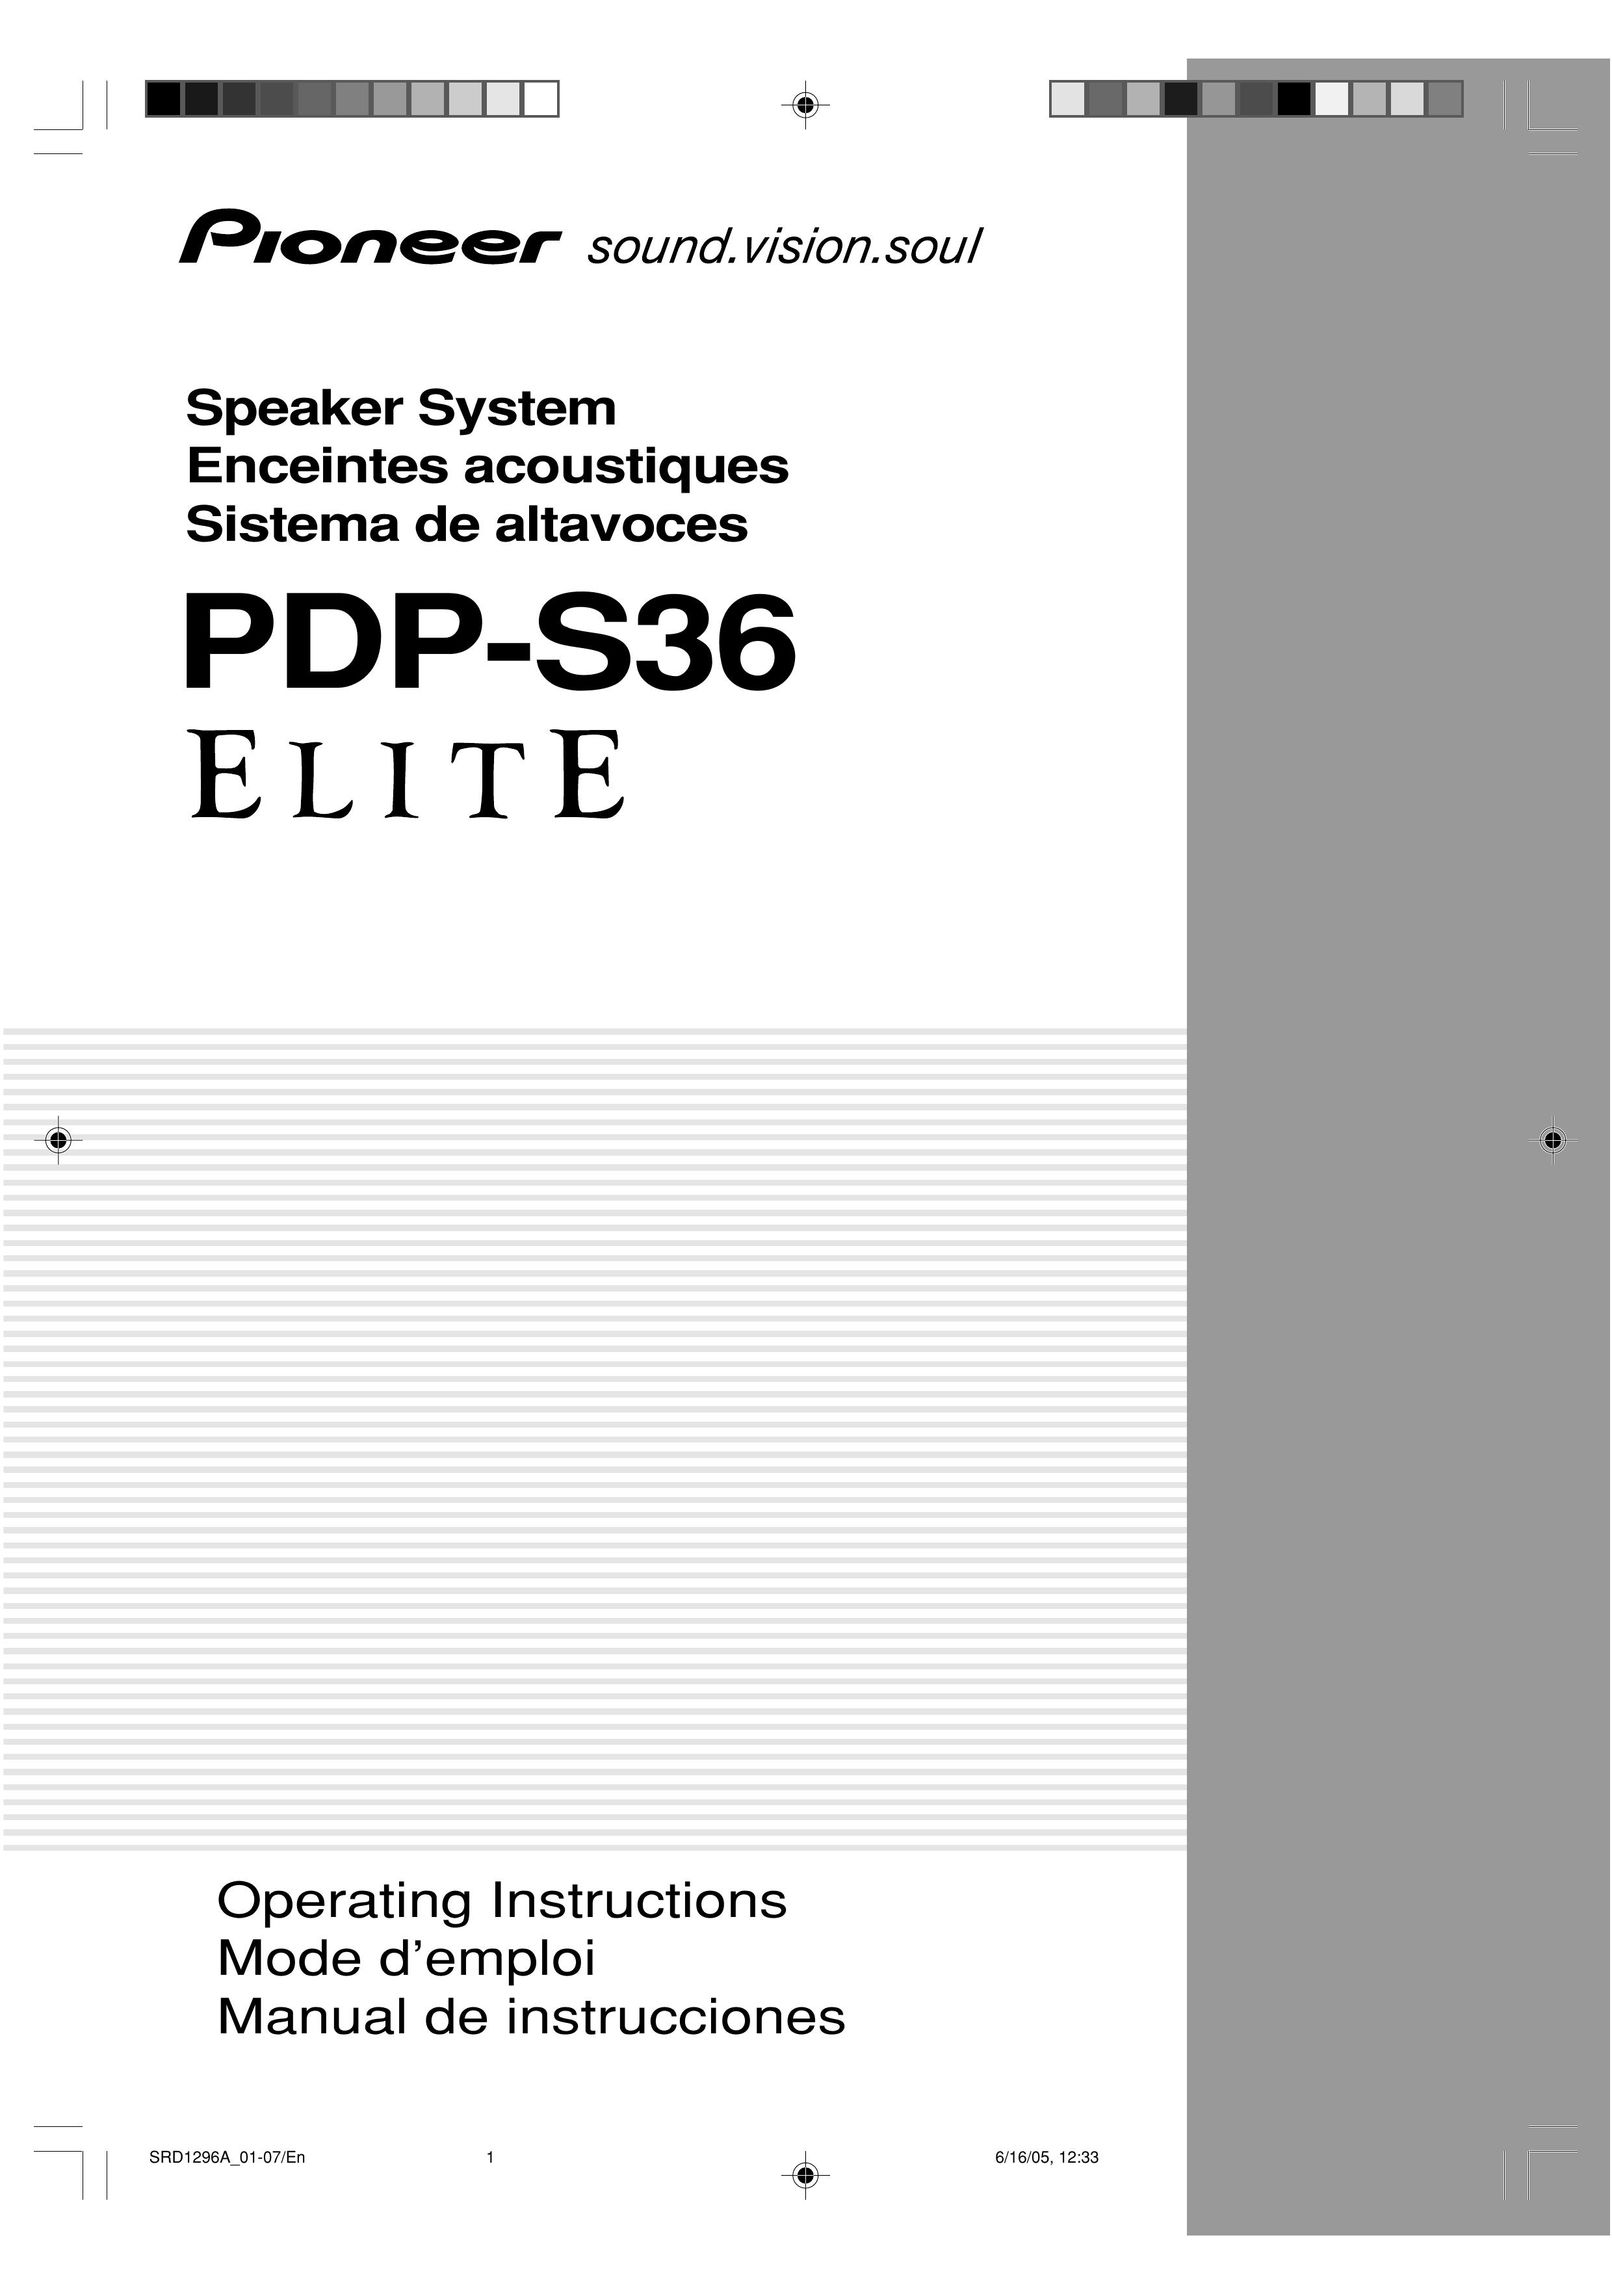 Pioneer PDP-S36 Portable Speaker User Manual